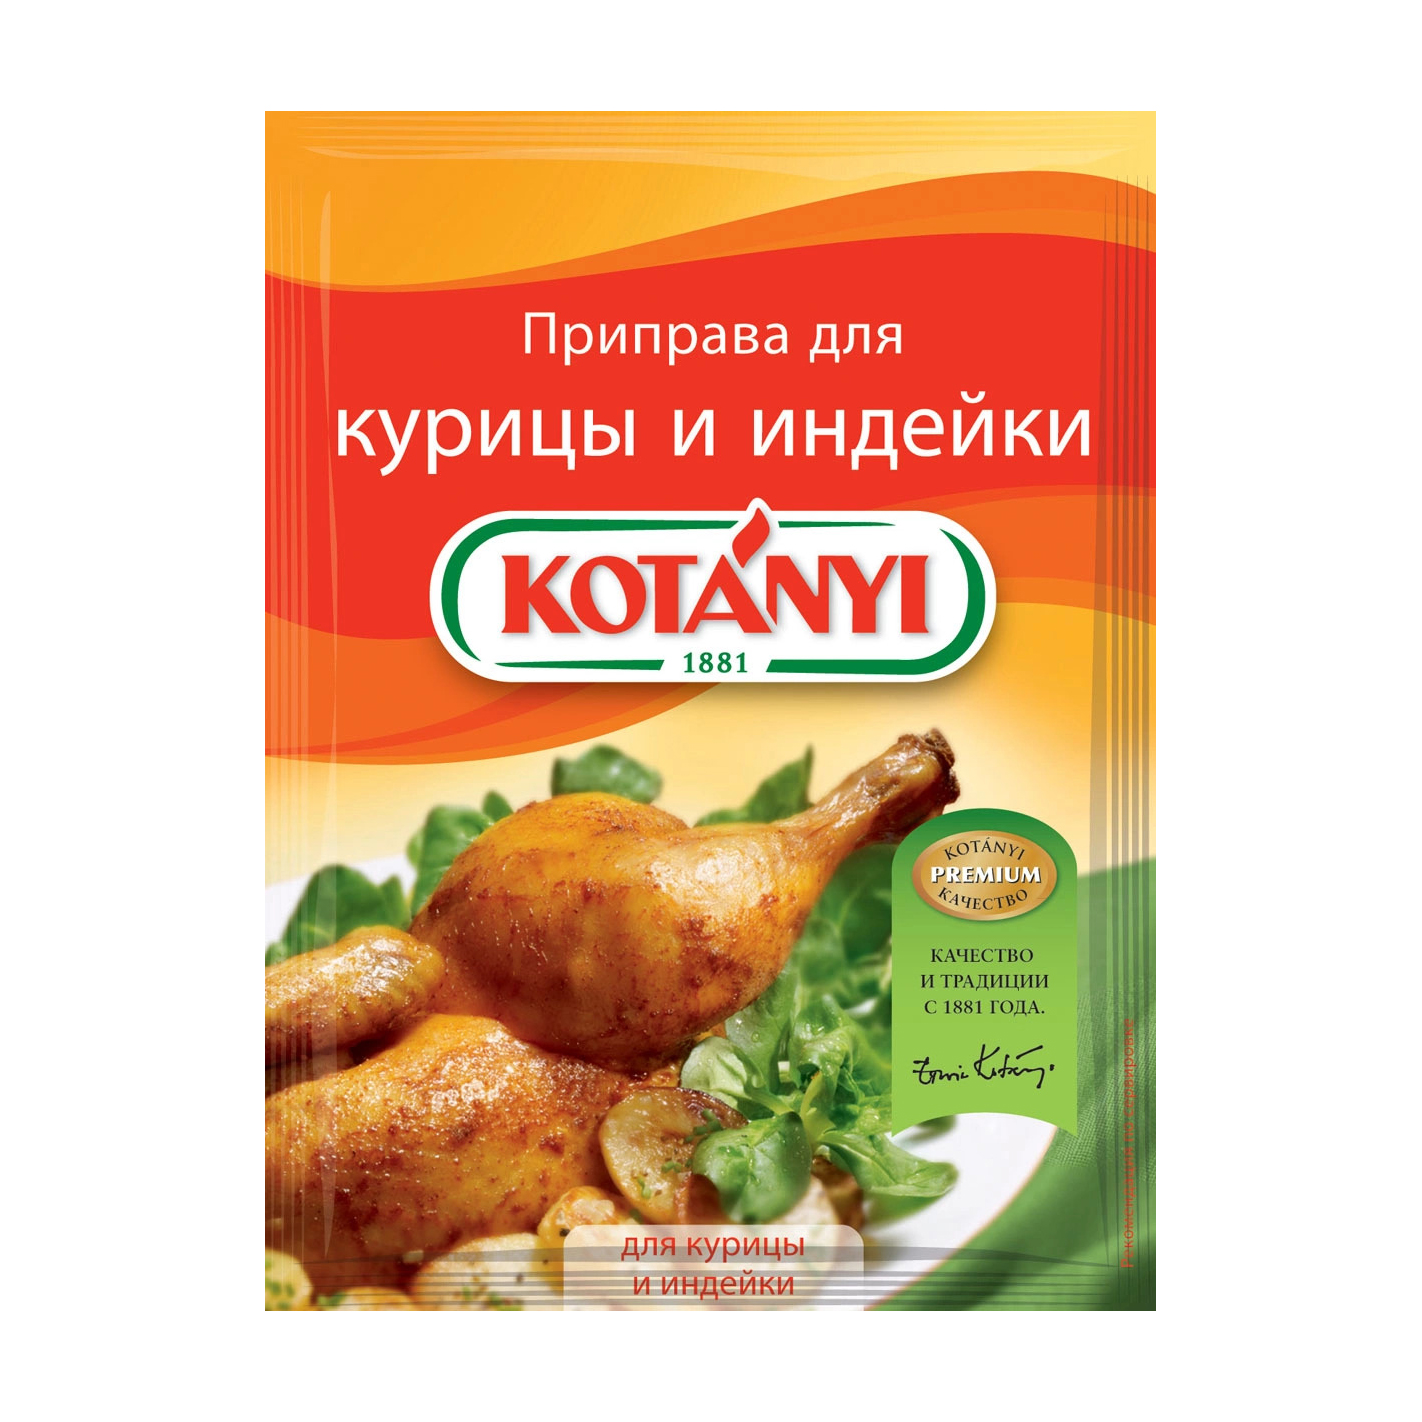 Приправа Kotanyi для курицы и индейки 30 г приправа kotanyi для рыбных блюд 44 г